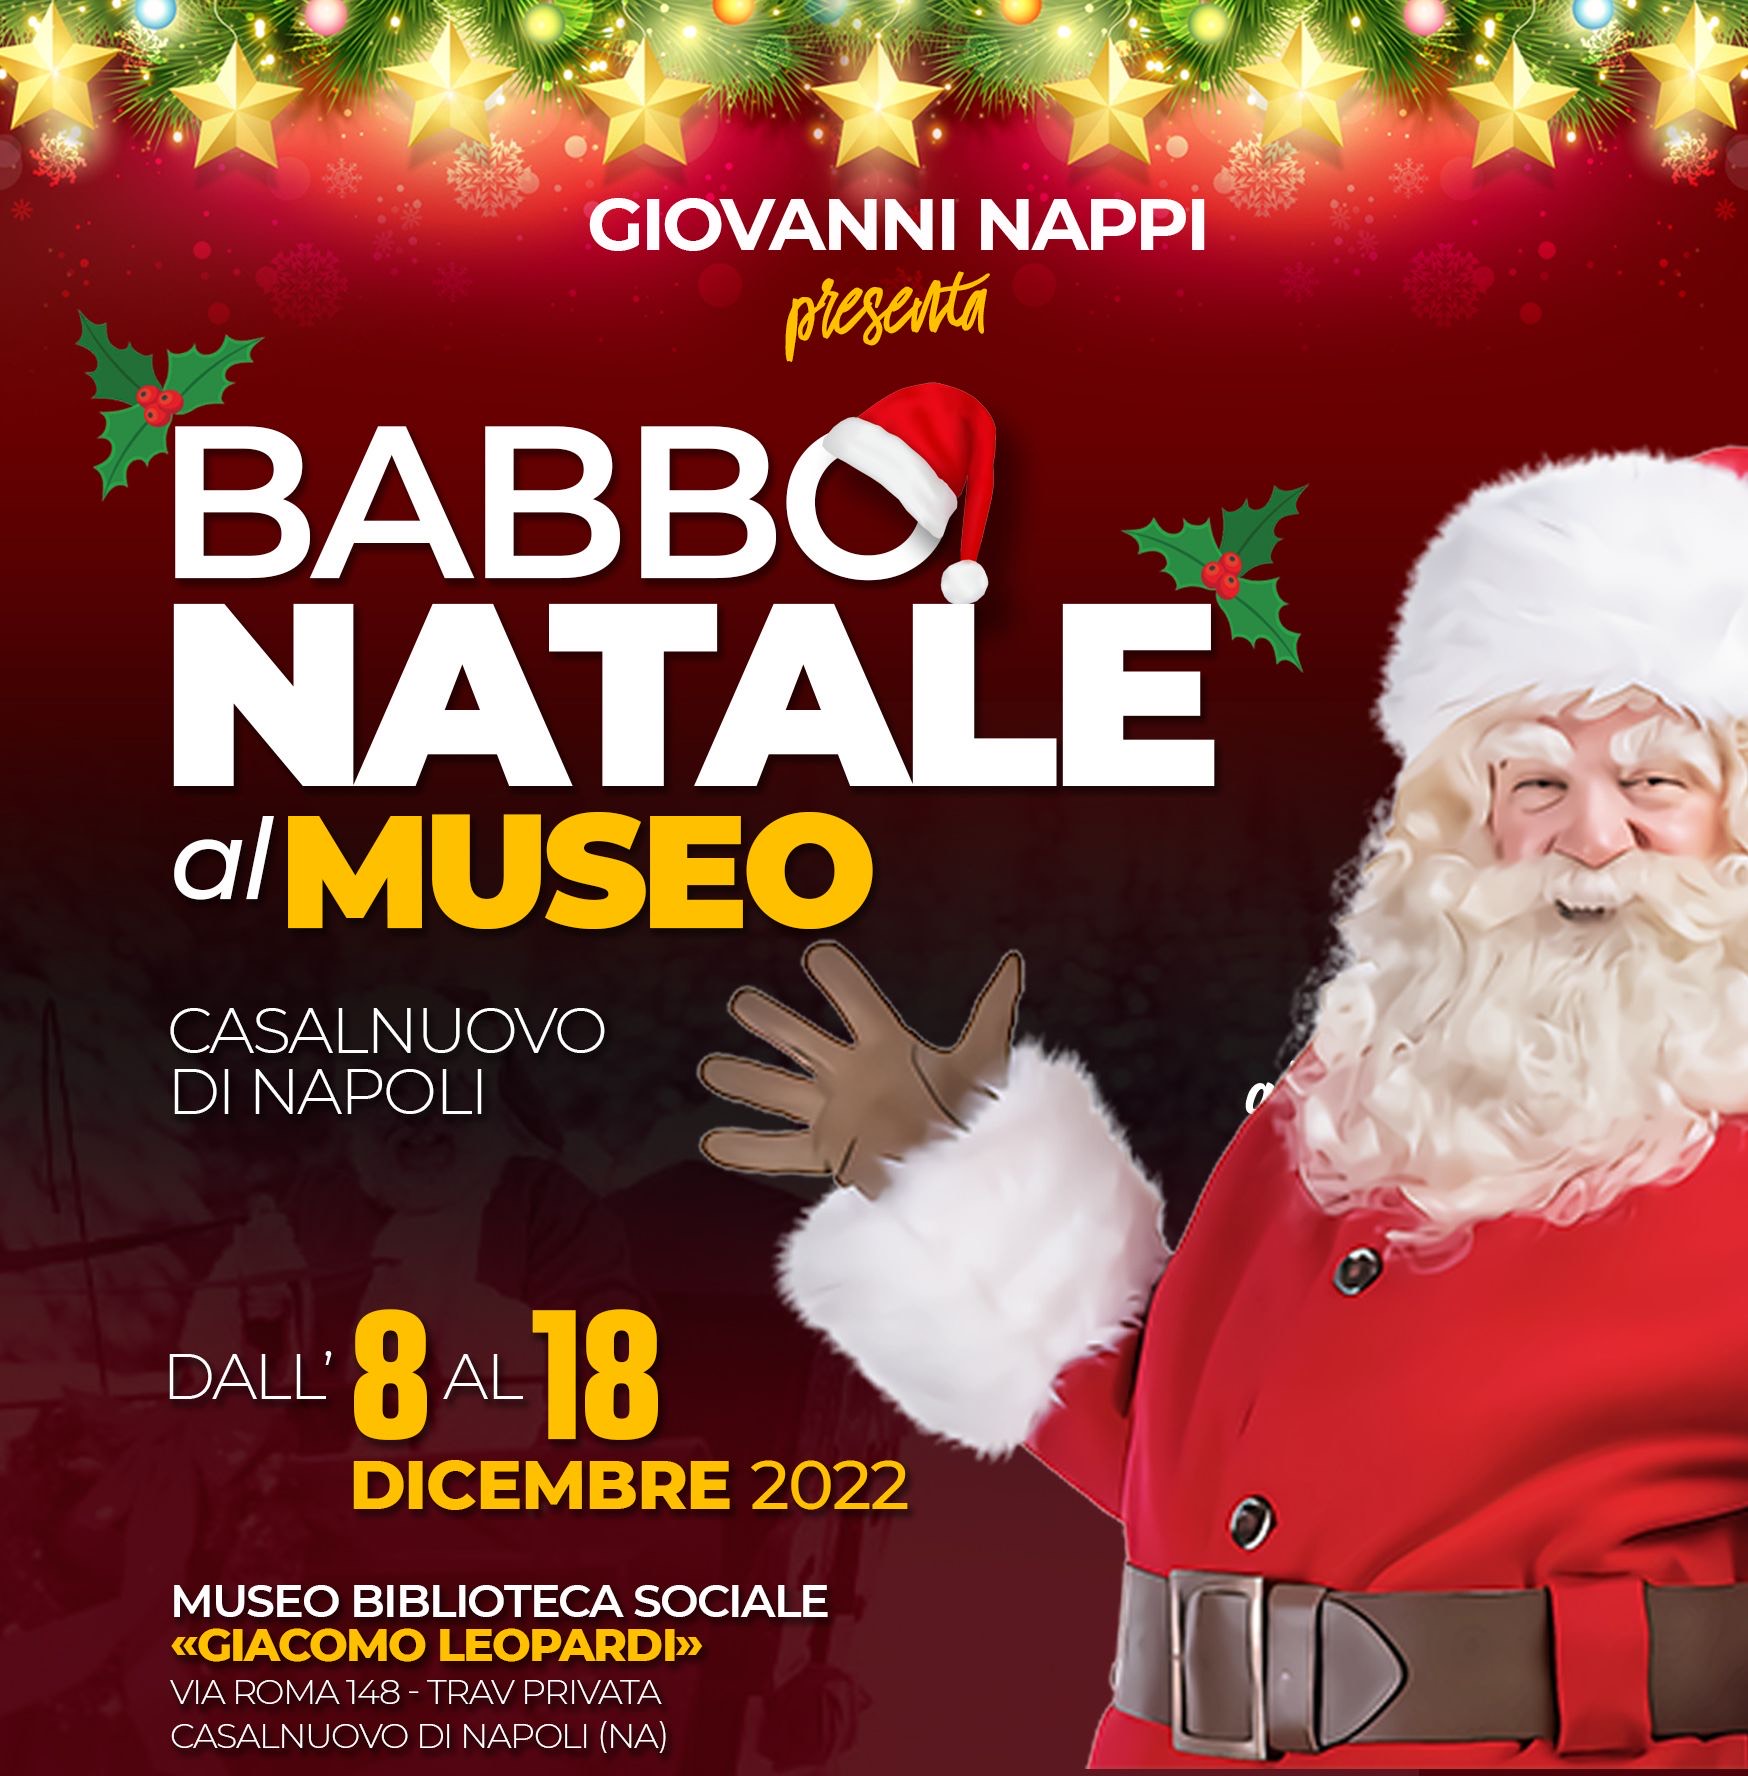 Casalnuovo di Napoli - Babbo Natale al Museo